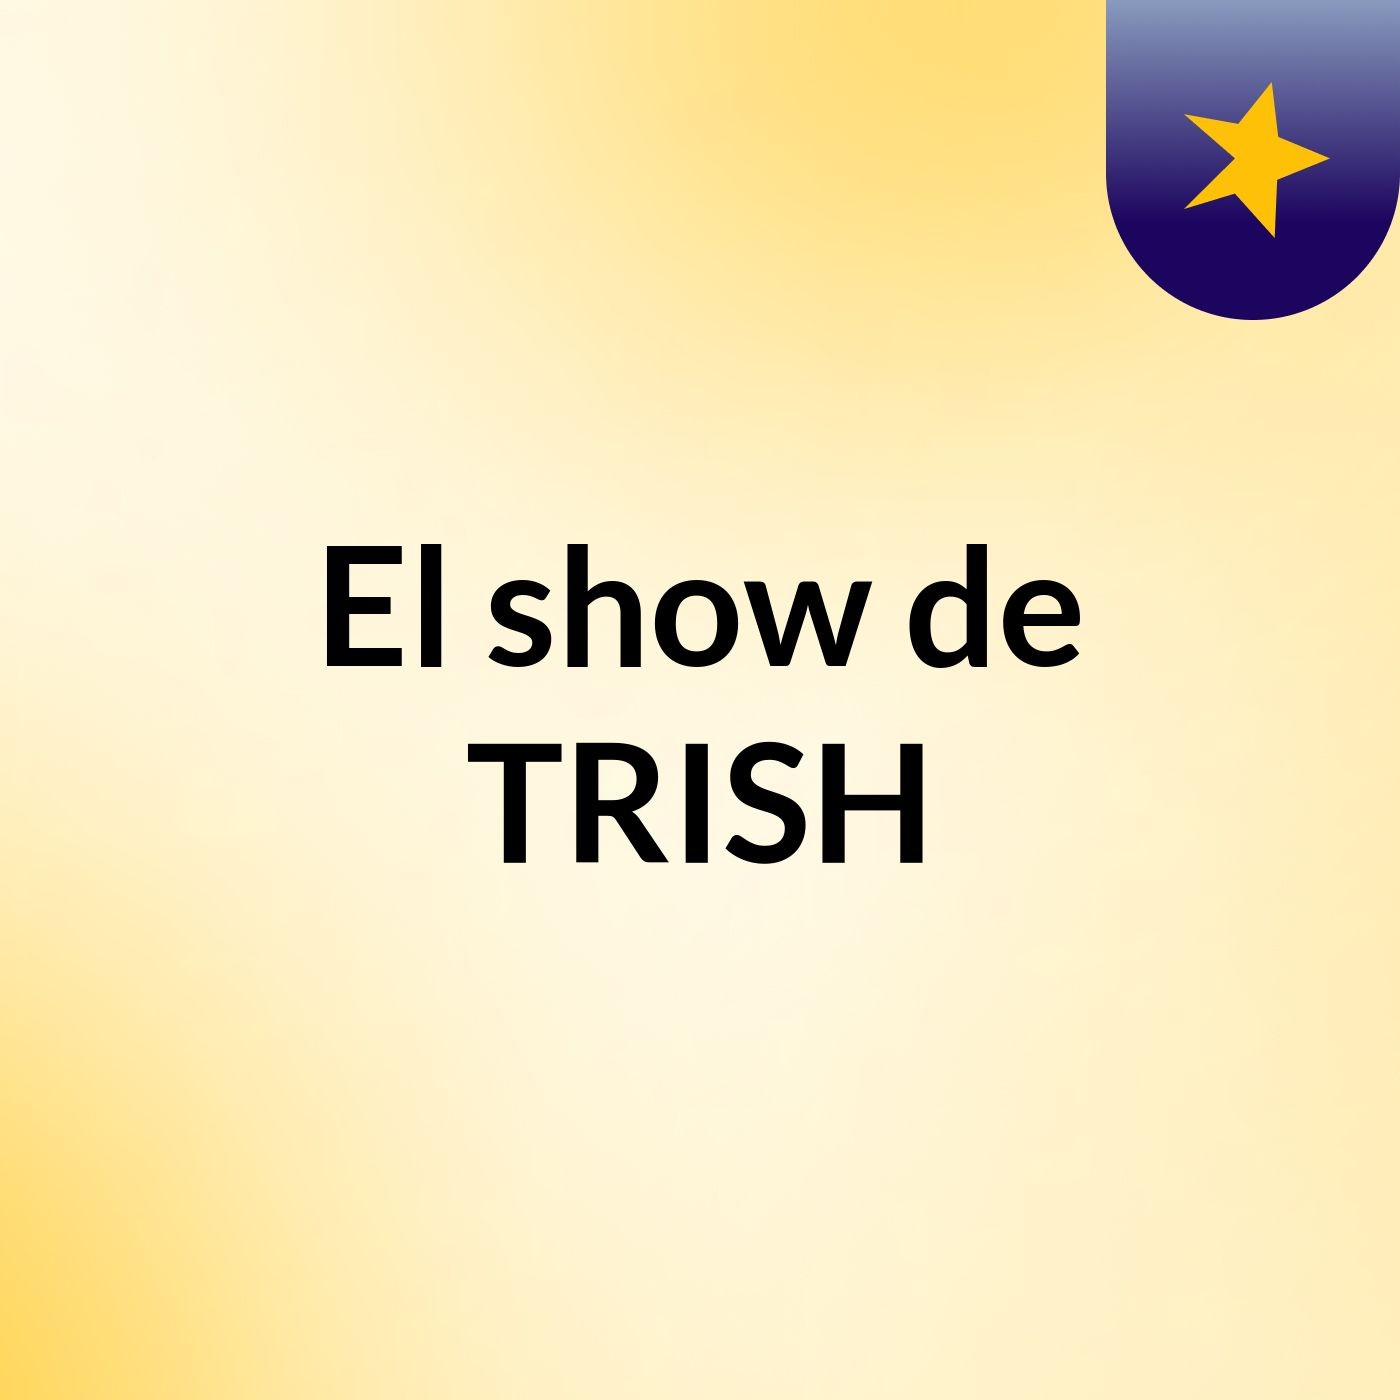 El show de TRISH